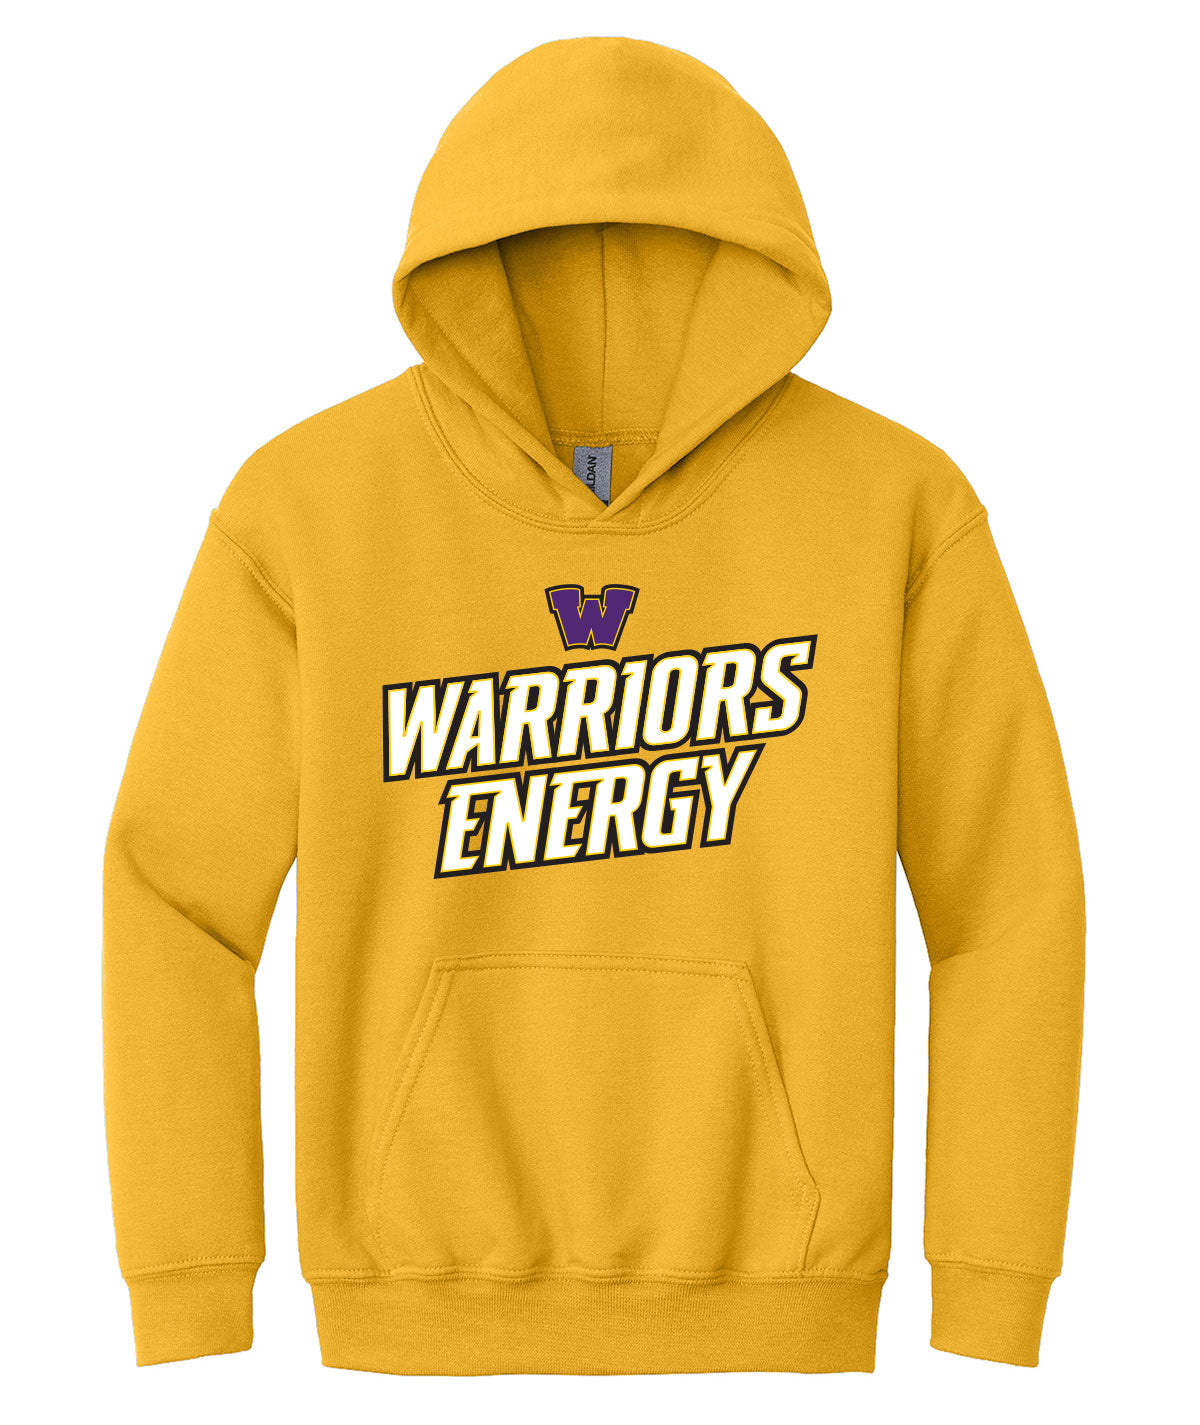 Warriors Energy Youth Hooded Sweatshirt